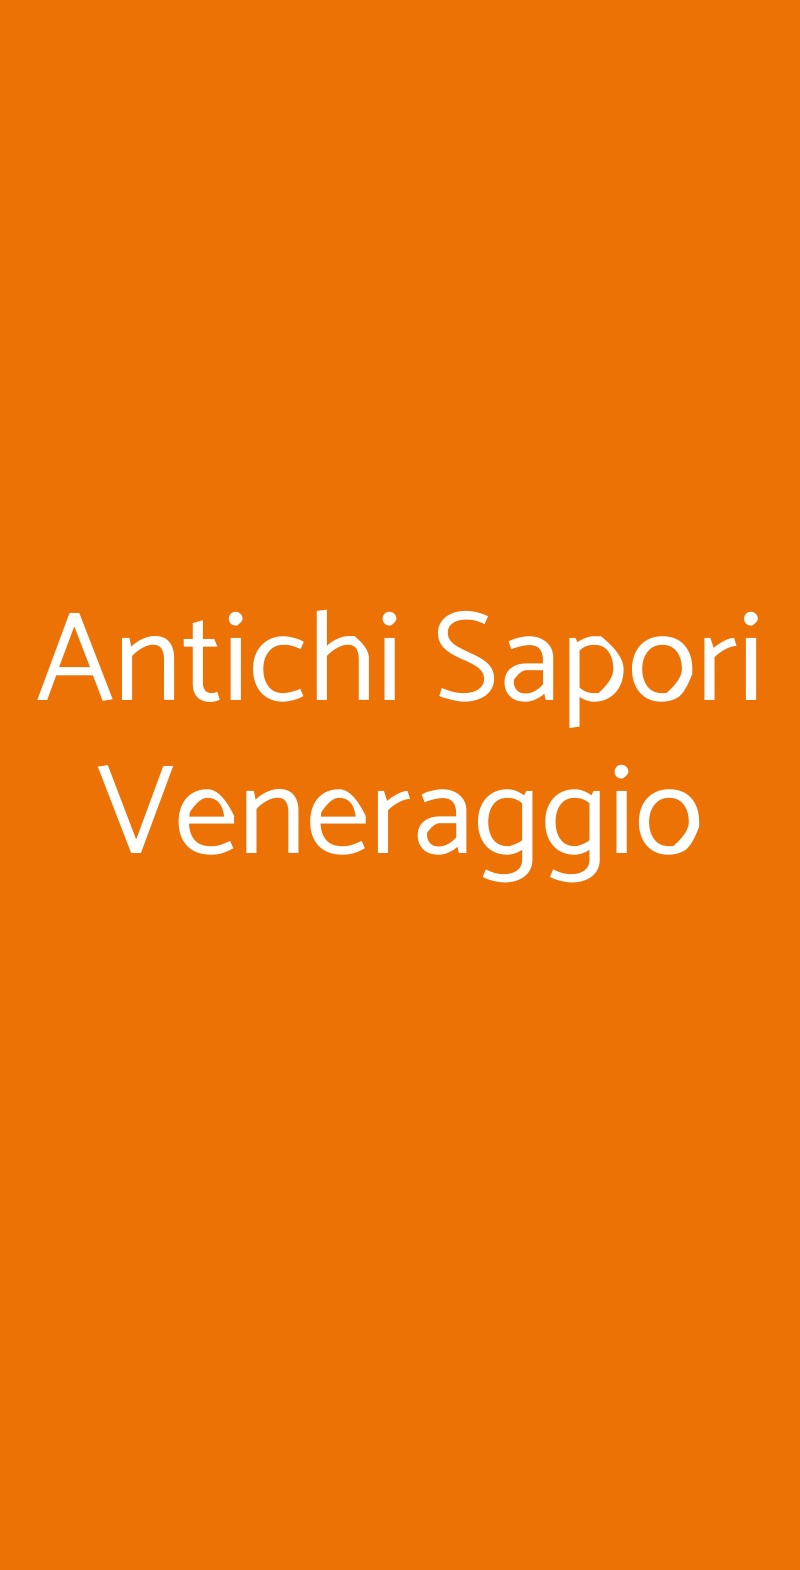 Antichi Sapori Veneraggio Calzisi menù 1 pagina